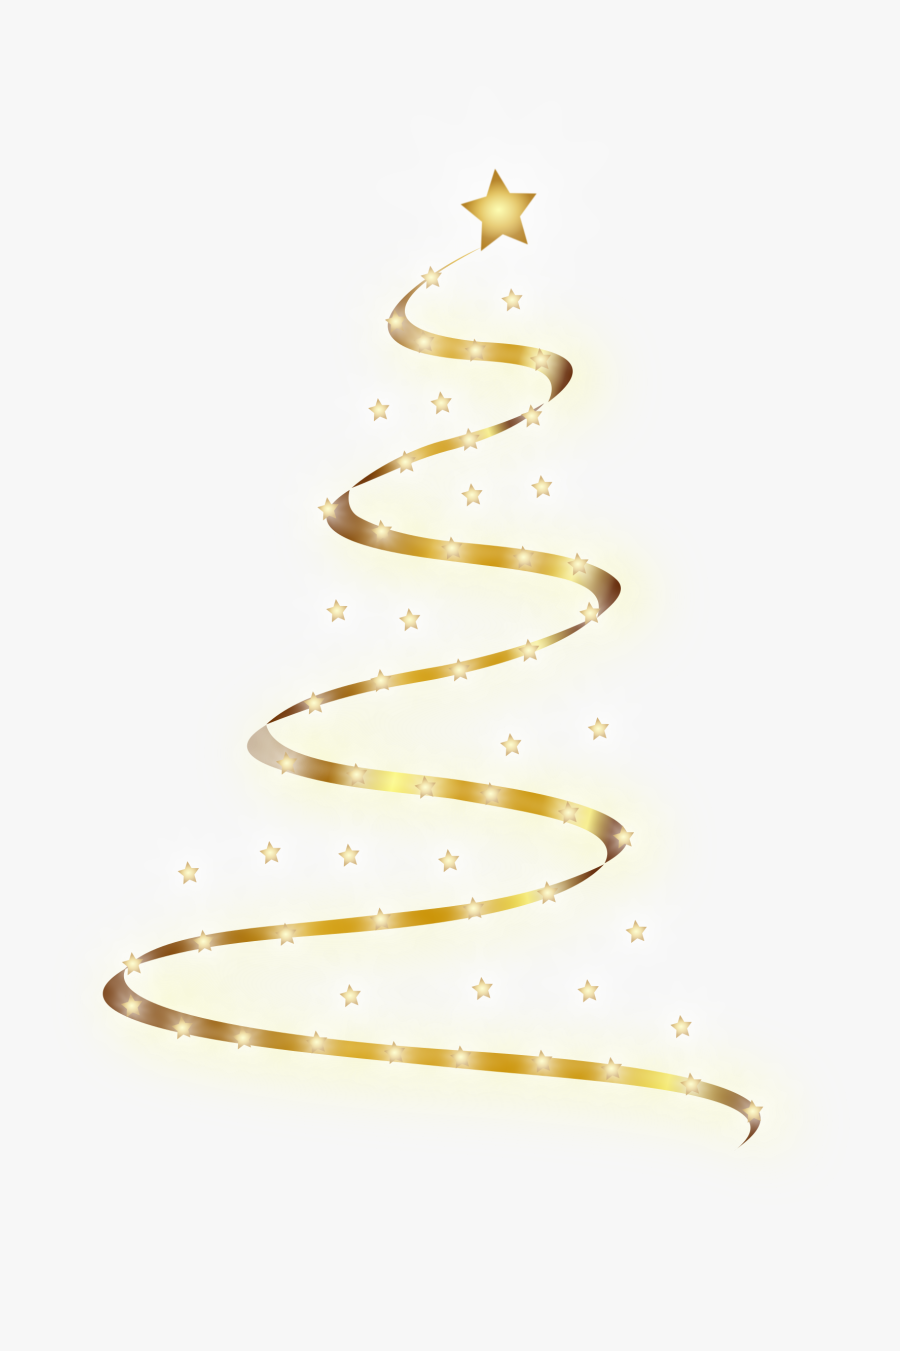 Public Domain Clip Art Image - Christmas Tree Lights Png, Transparent Clipart